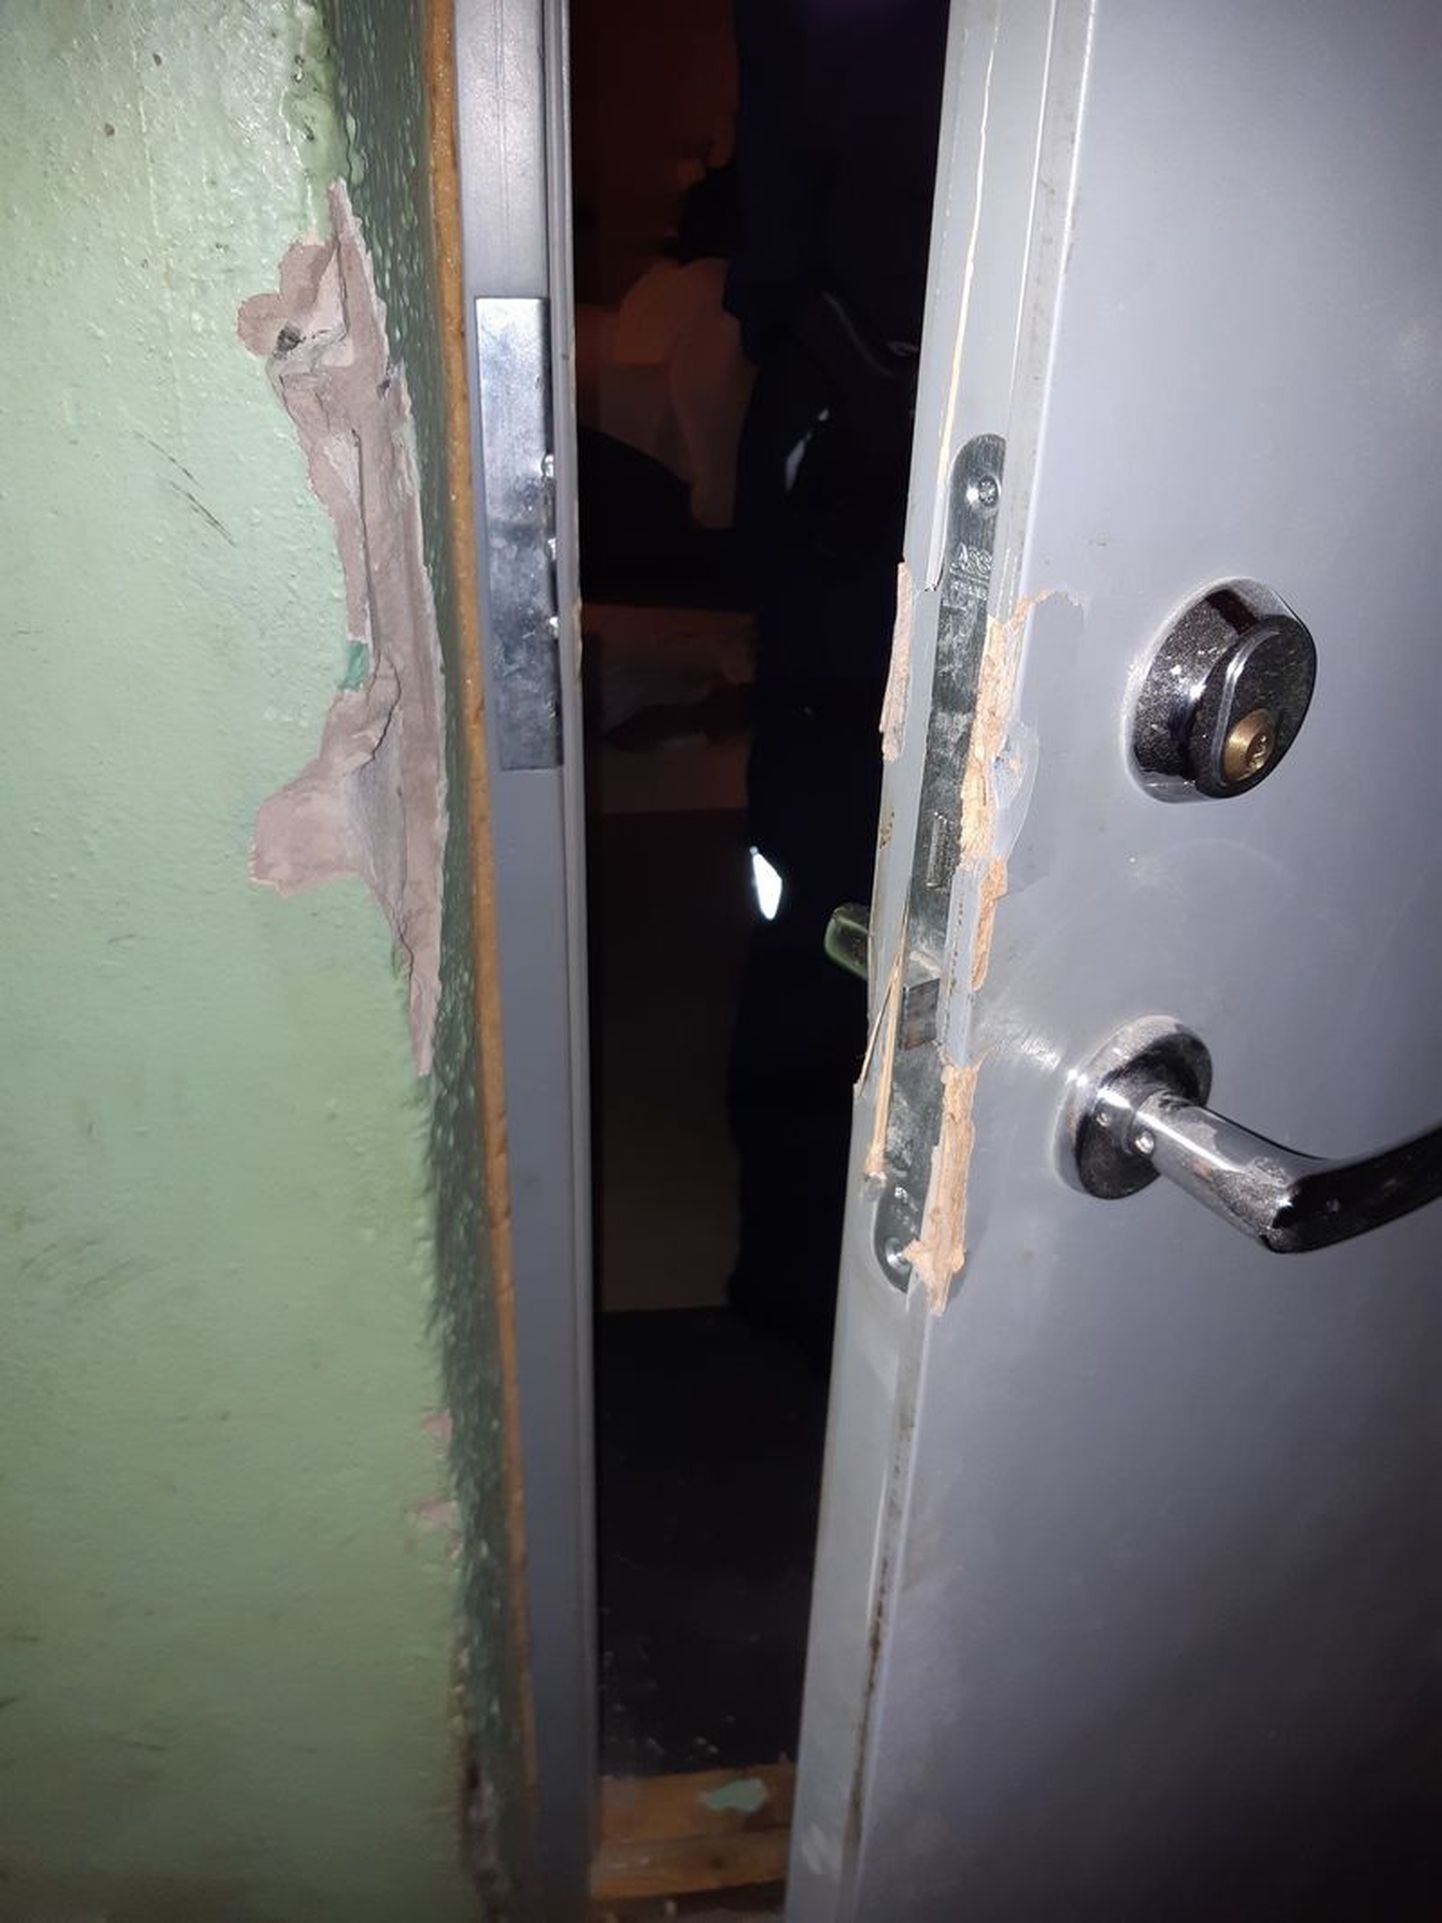 Kukkunud mehe abistamiseks tuli uks kangiga maha murda. Foto on illustratiivne.